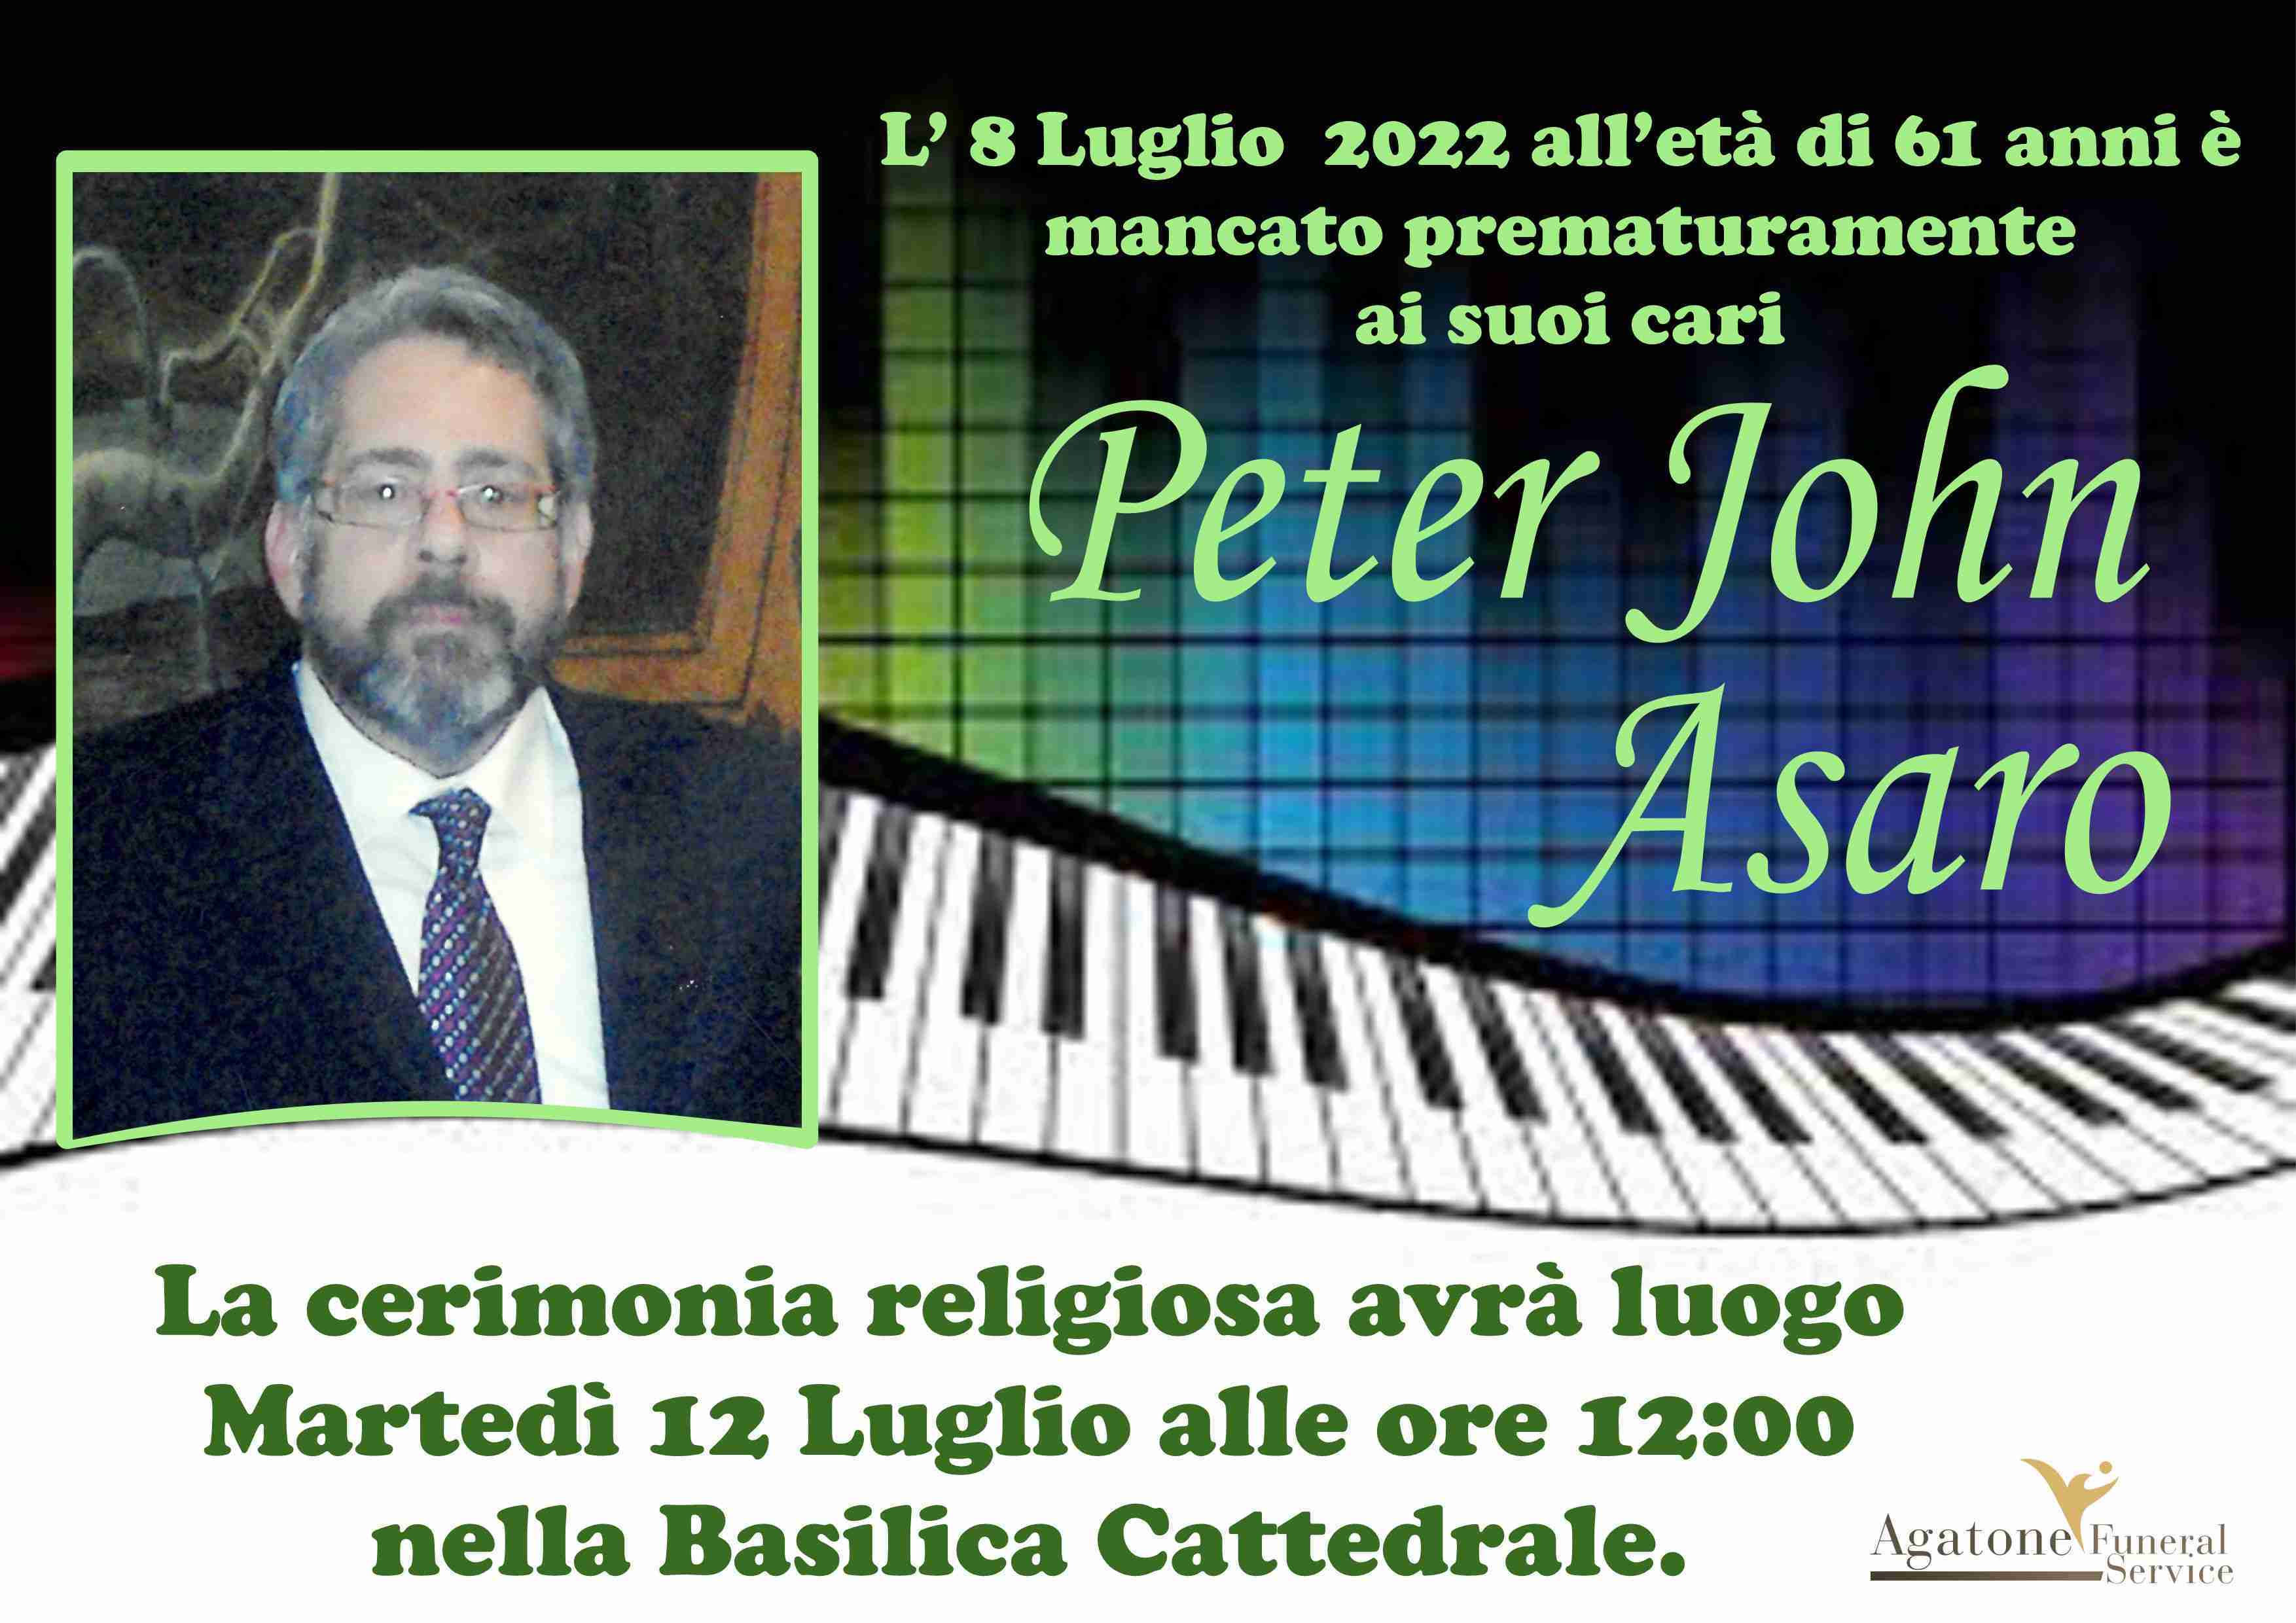 Peter John Asaro